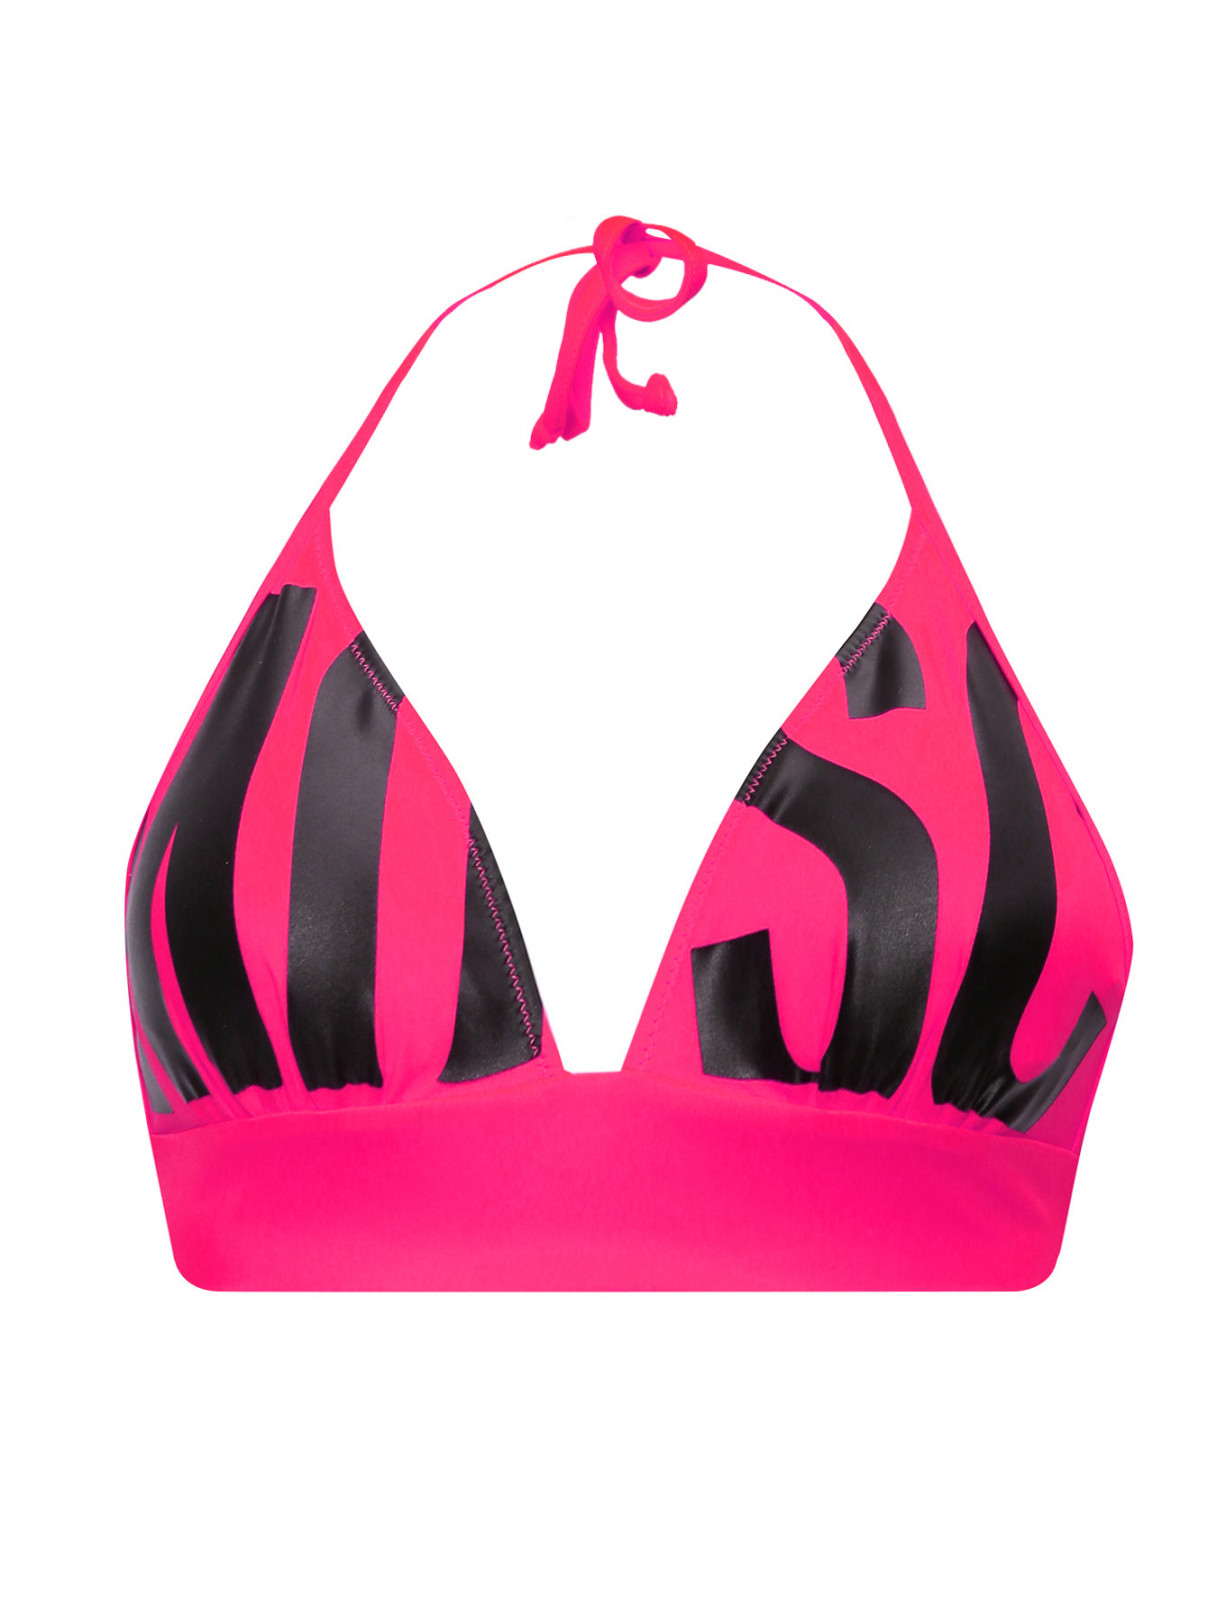 Купальник верх с контрастным принтом Moschino Swim  –  Общий вид  – Цвет:  Розовый